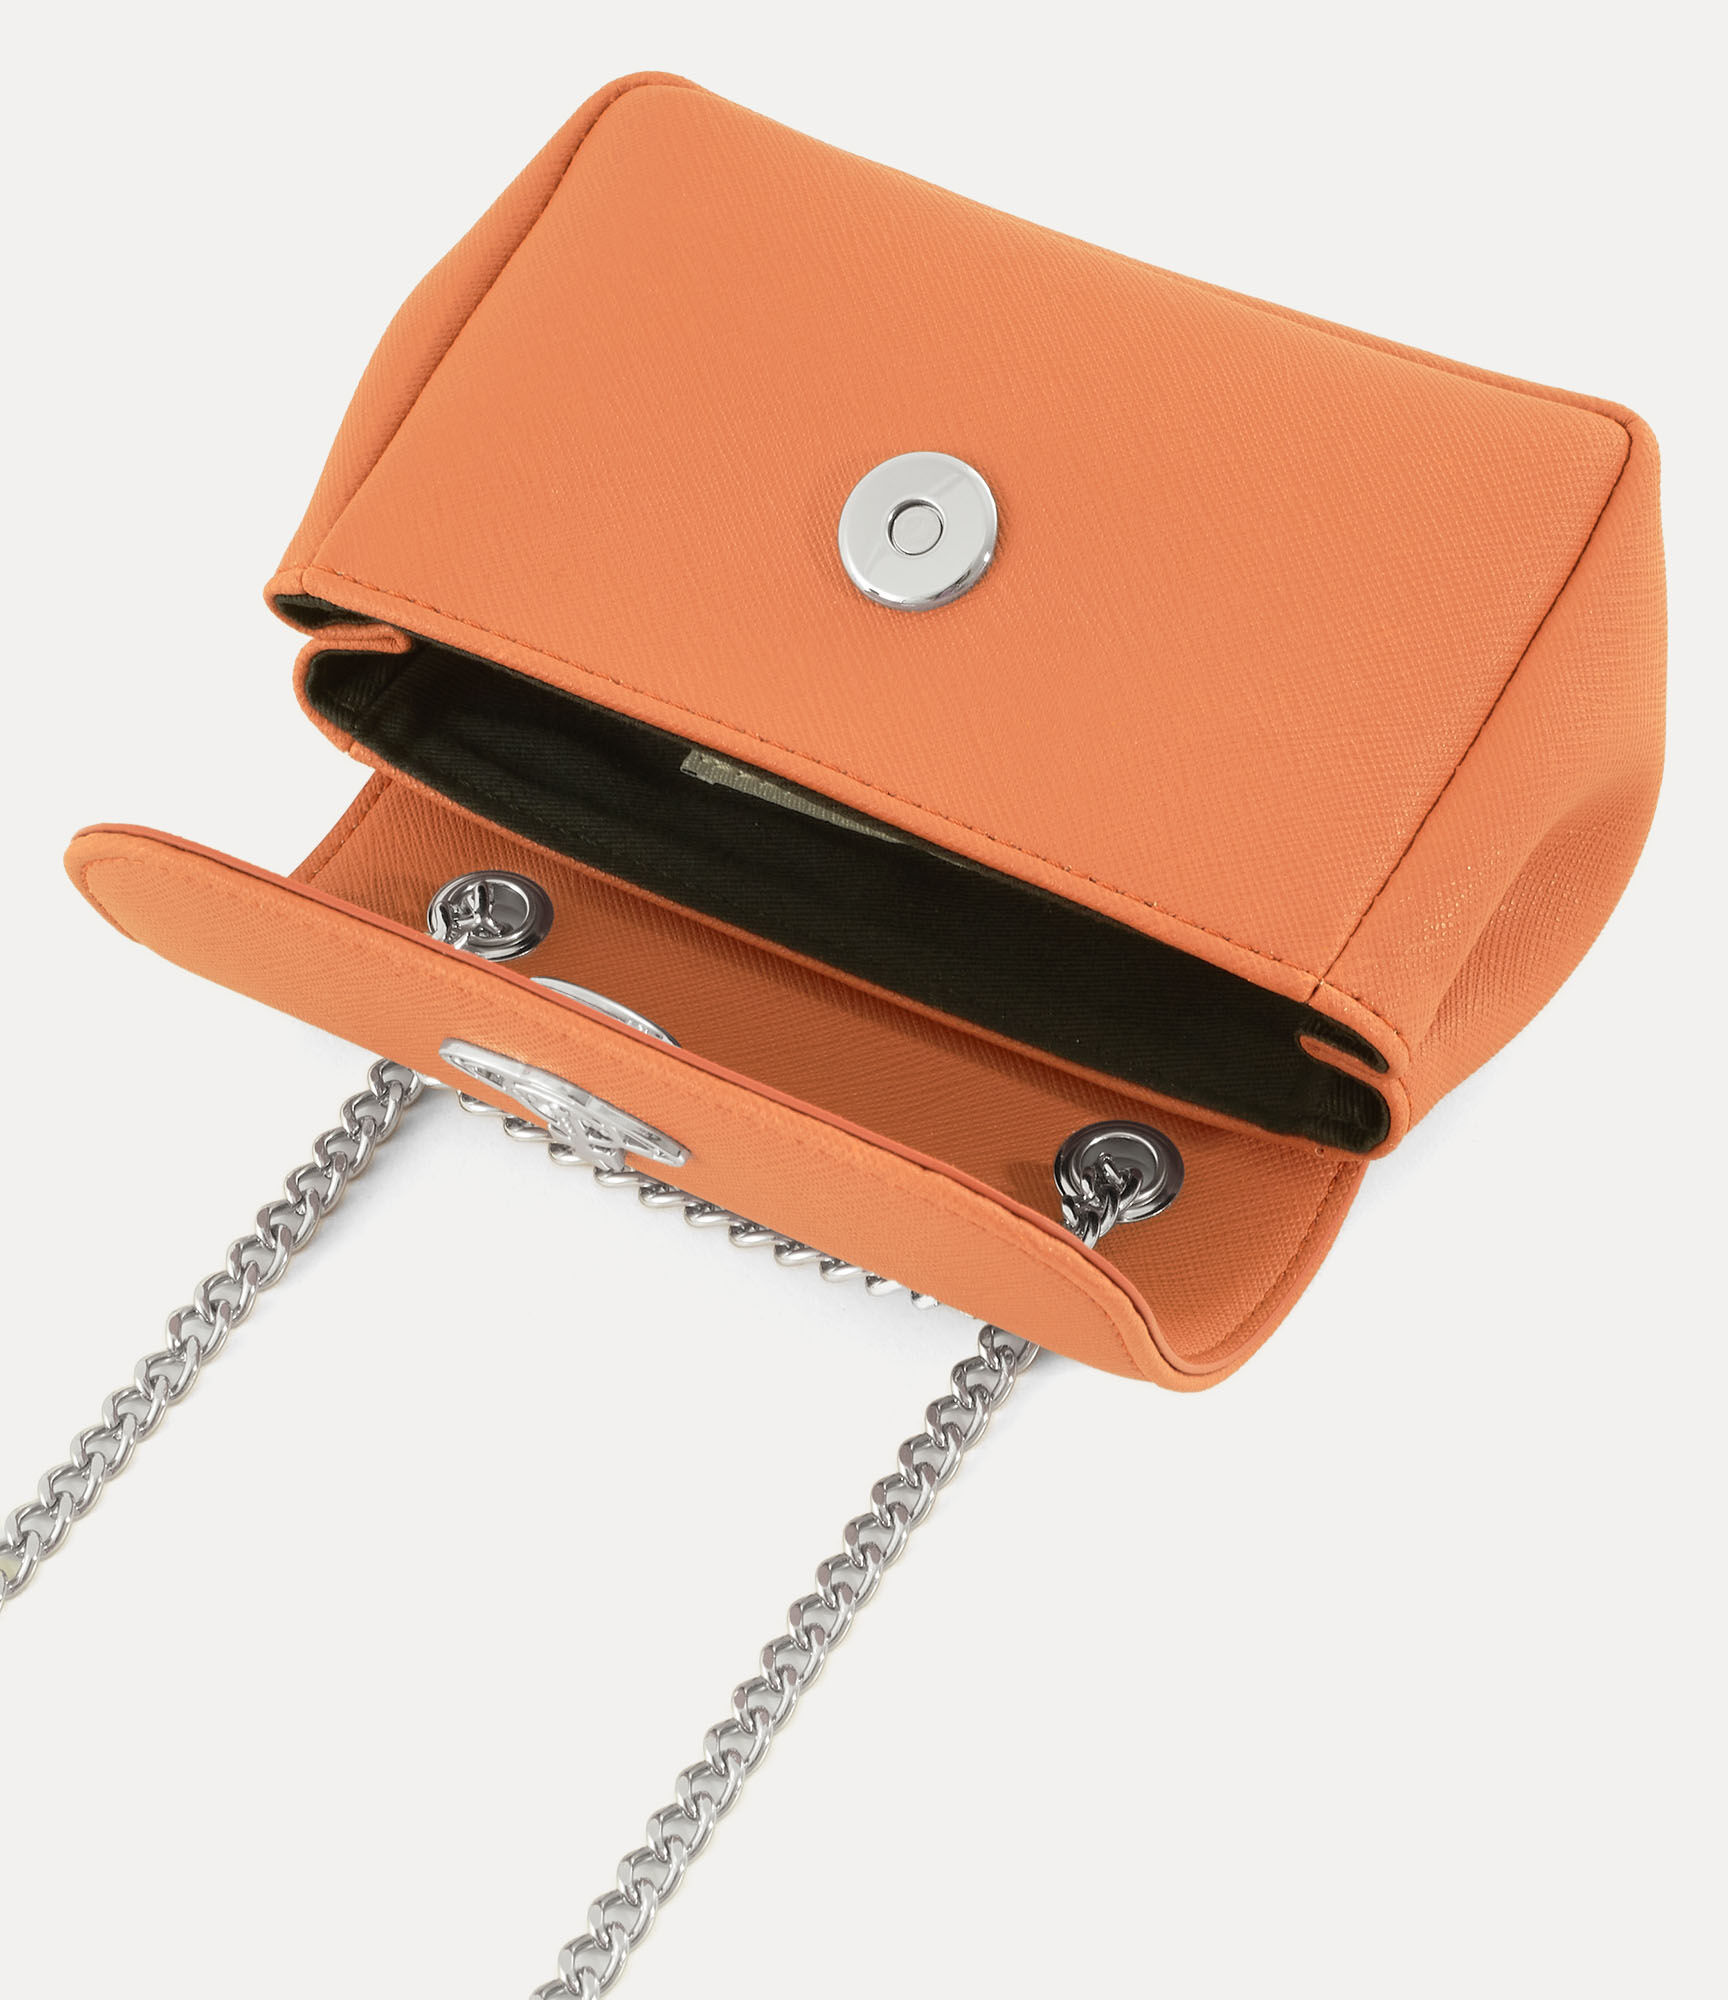 Saffiano biogreen small purse with chain